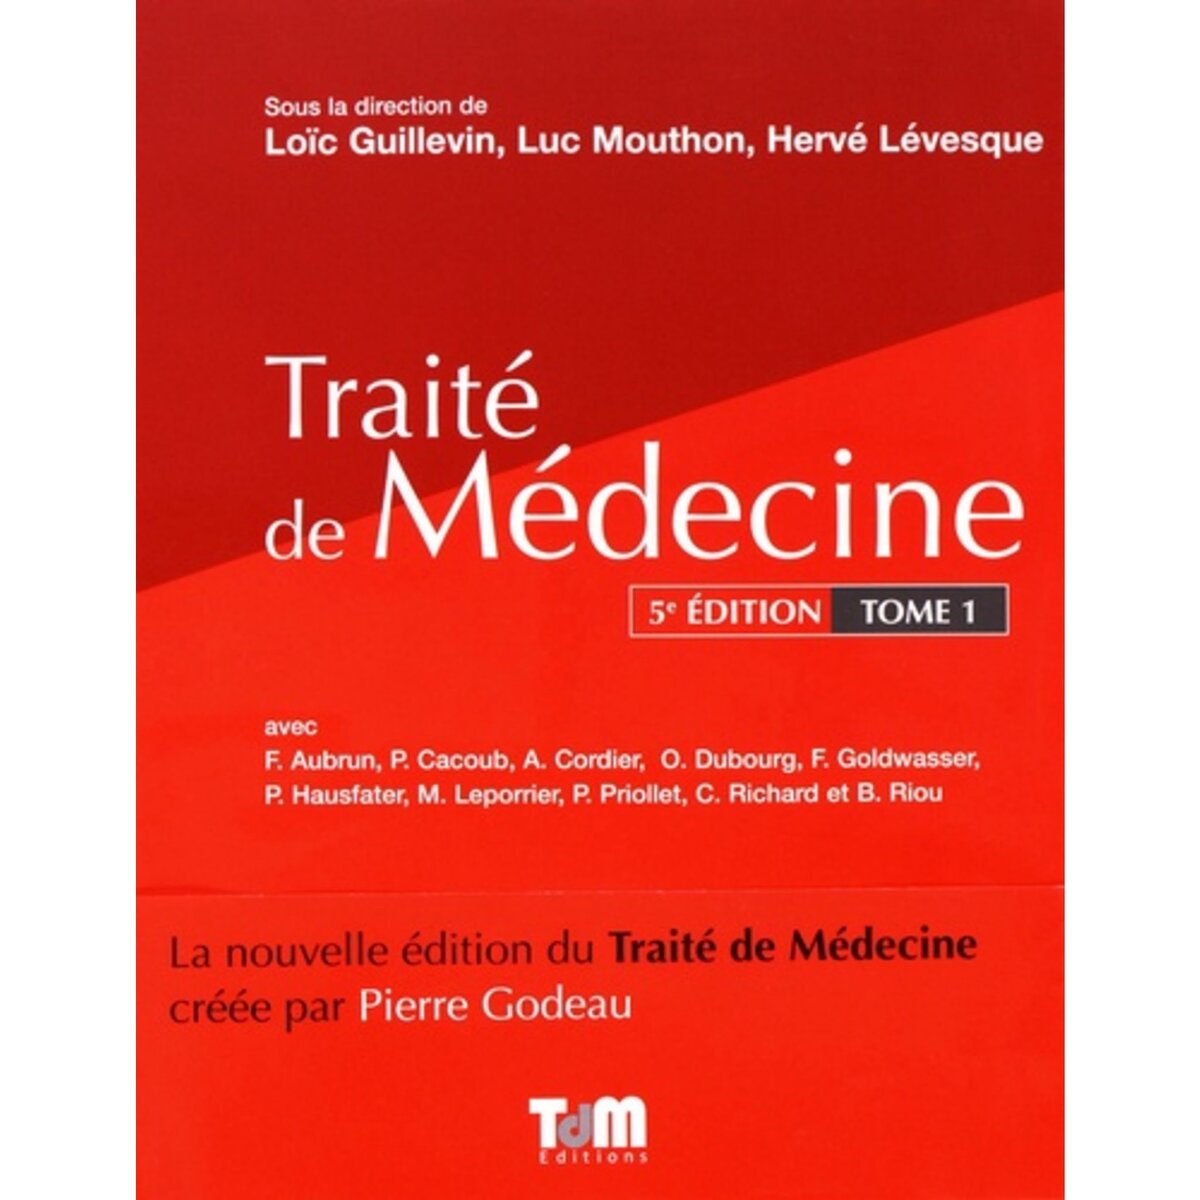  TRAITE DE MEDECINE. TOME 1, 5E EDITION, Guillevin Loïc